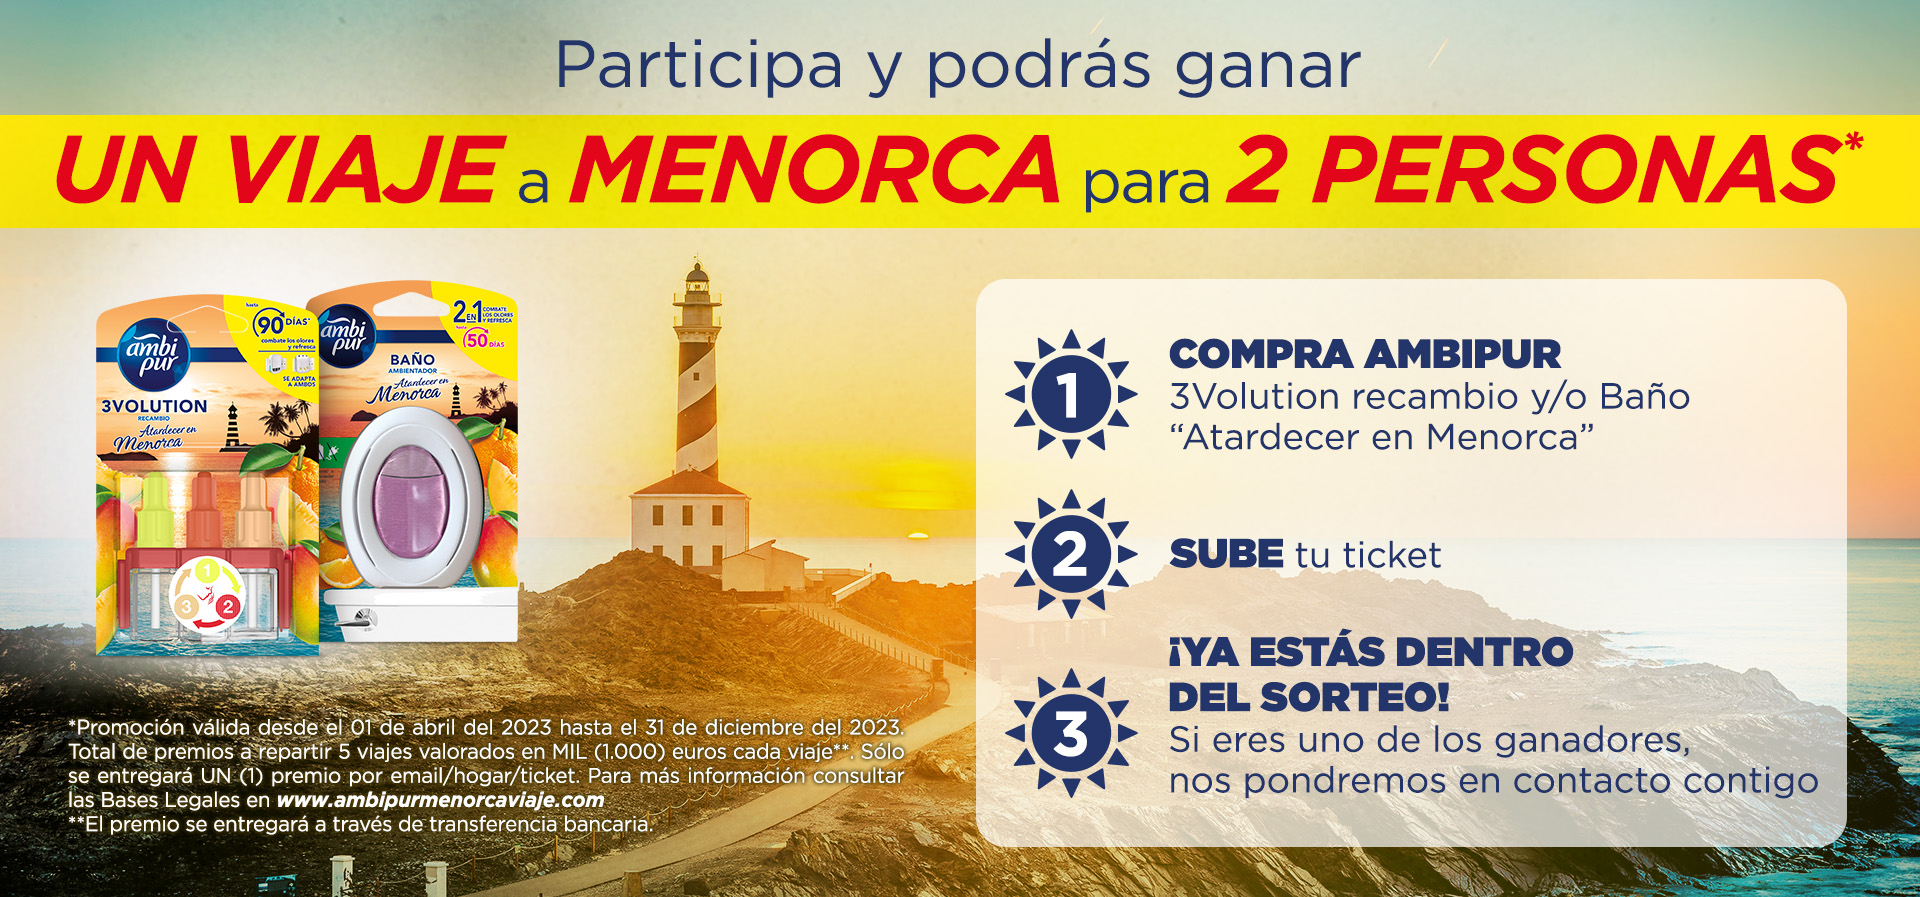 Muestras de Ambipur baño y Ambipur Evolution - Participa y podrás ganar un viaje a Menorca para dos personas